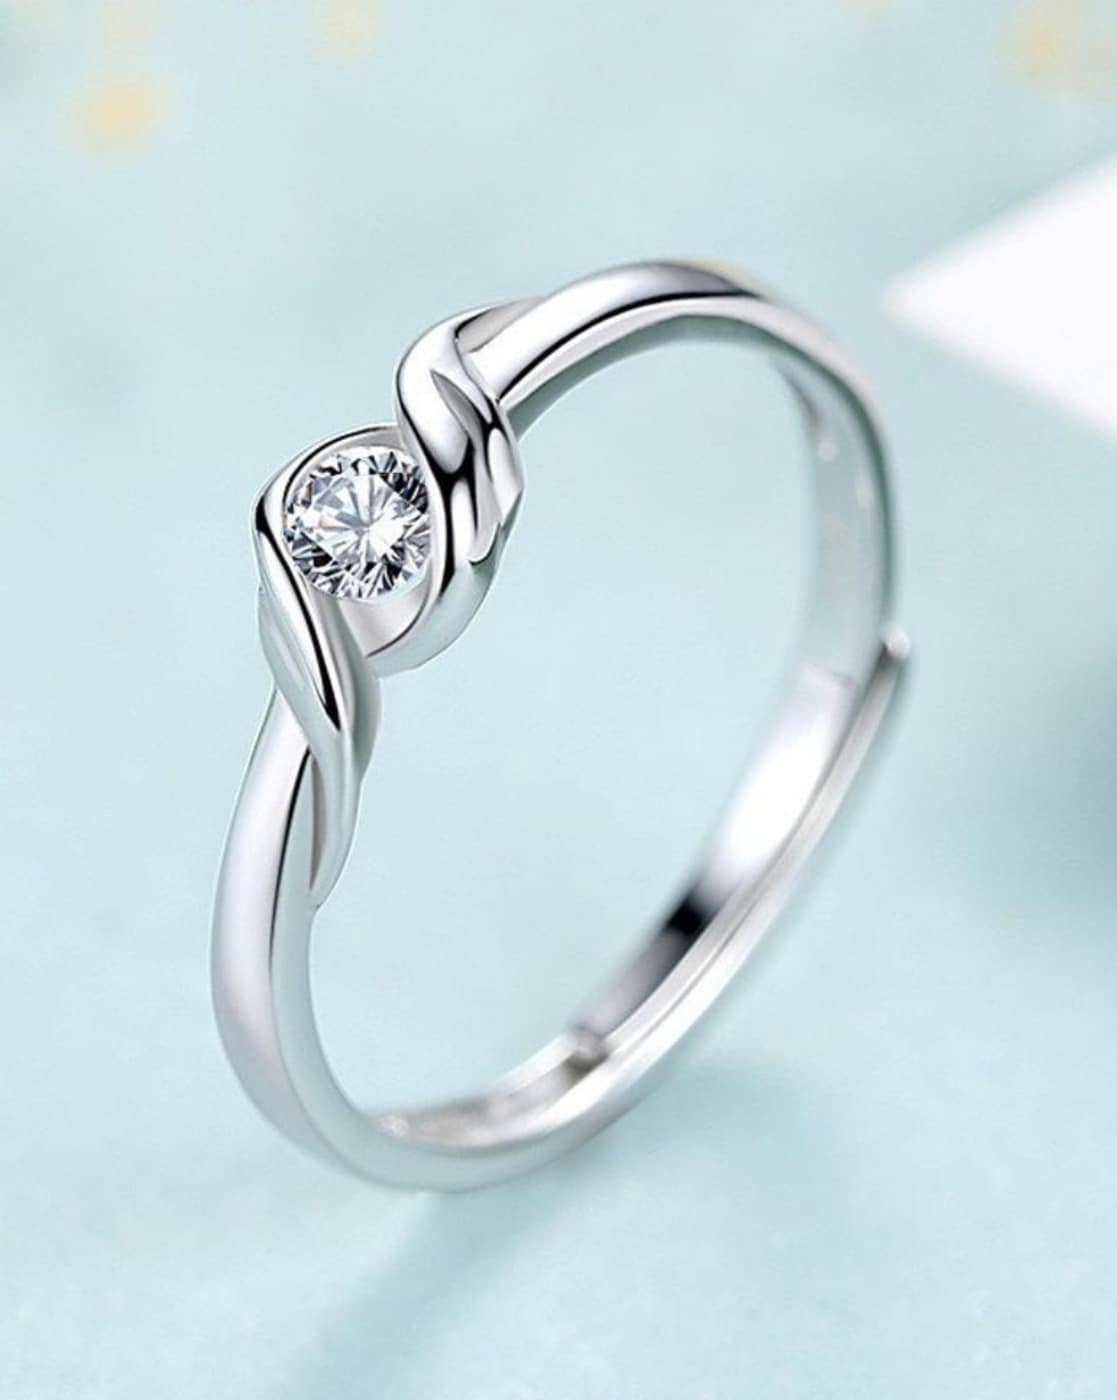 चांदी की यह खूबसूरत Ring's, आपके लुक को पर्फेक्ट बना देगी देखिए डिजाइन